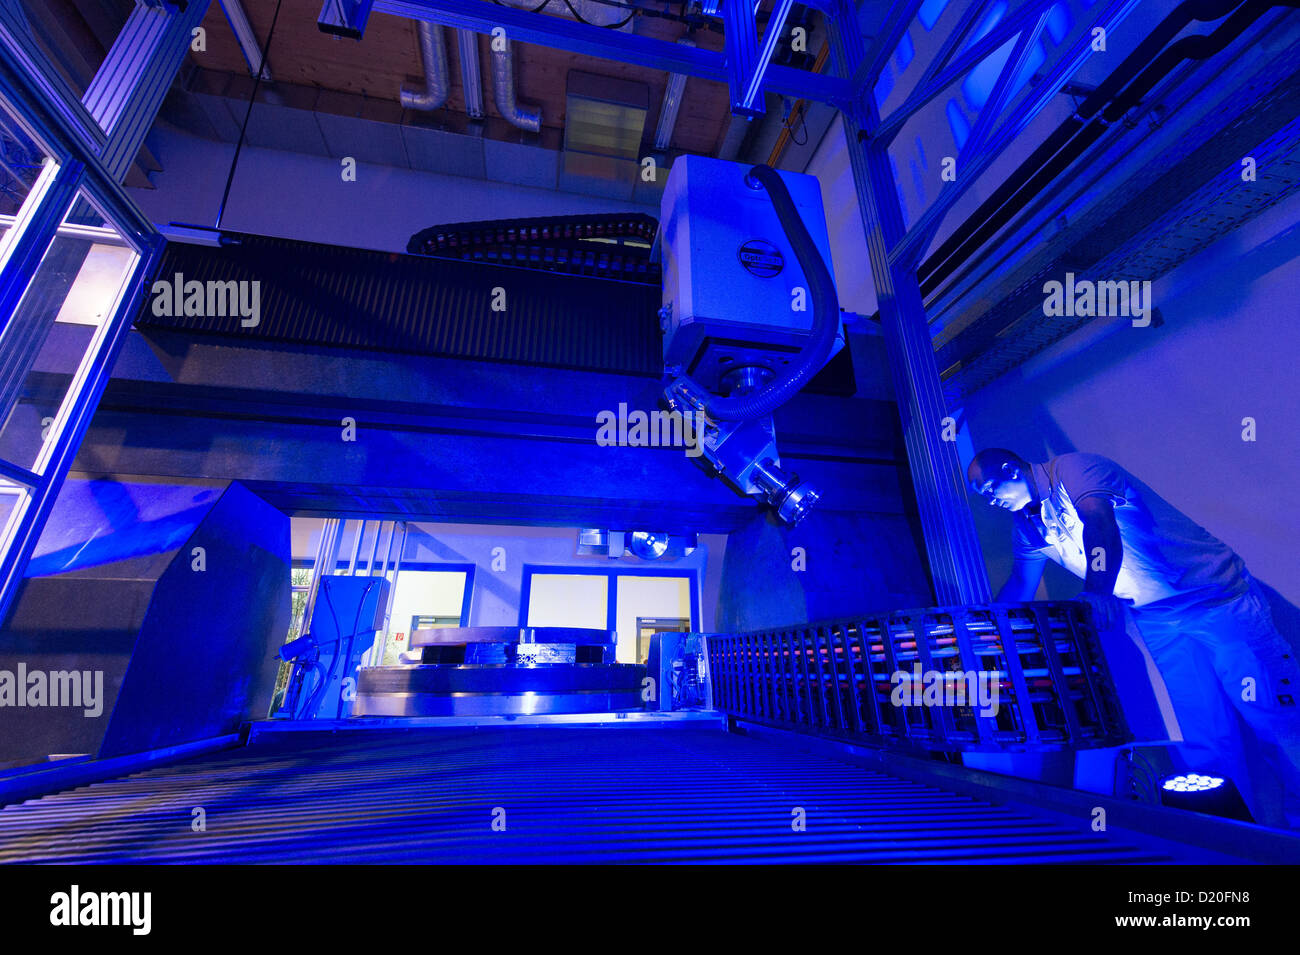 Majid Salimi técnico trabaja en el equipo óptico más grande del mundo en el campus de tecnología en Teisnach, Alemania, 09 de enero de 2013. La máquina está supuesta a producir en serie los espejos para telescopios con diámetros de hasta dos metros de investigaciones espaciales. Foto: ARMIN WEIGEL Foto de stock